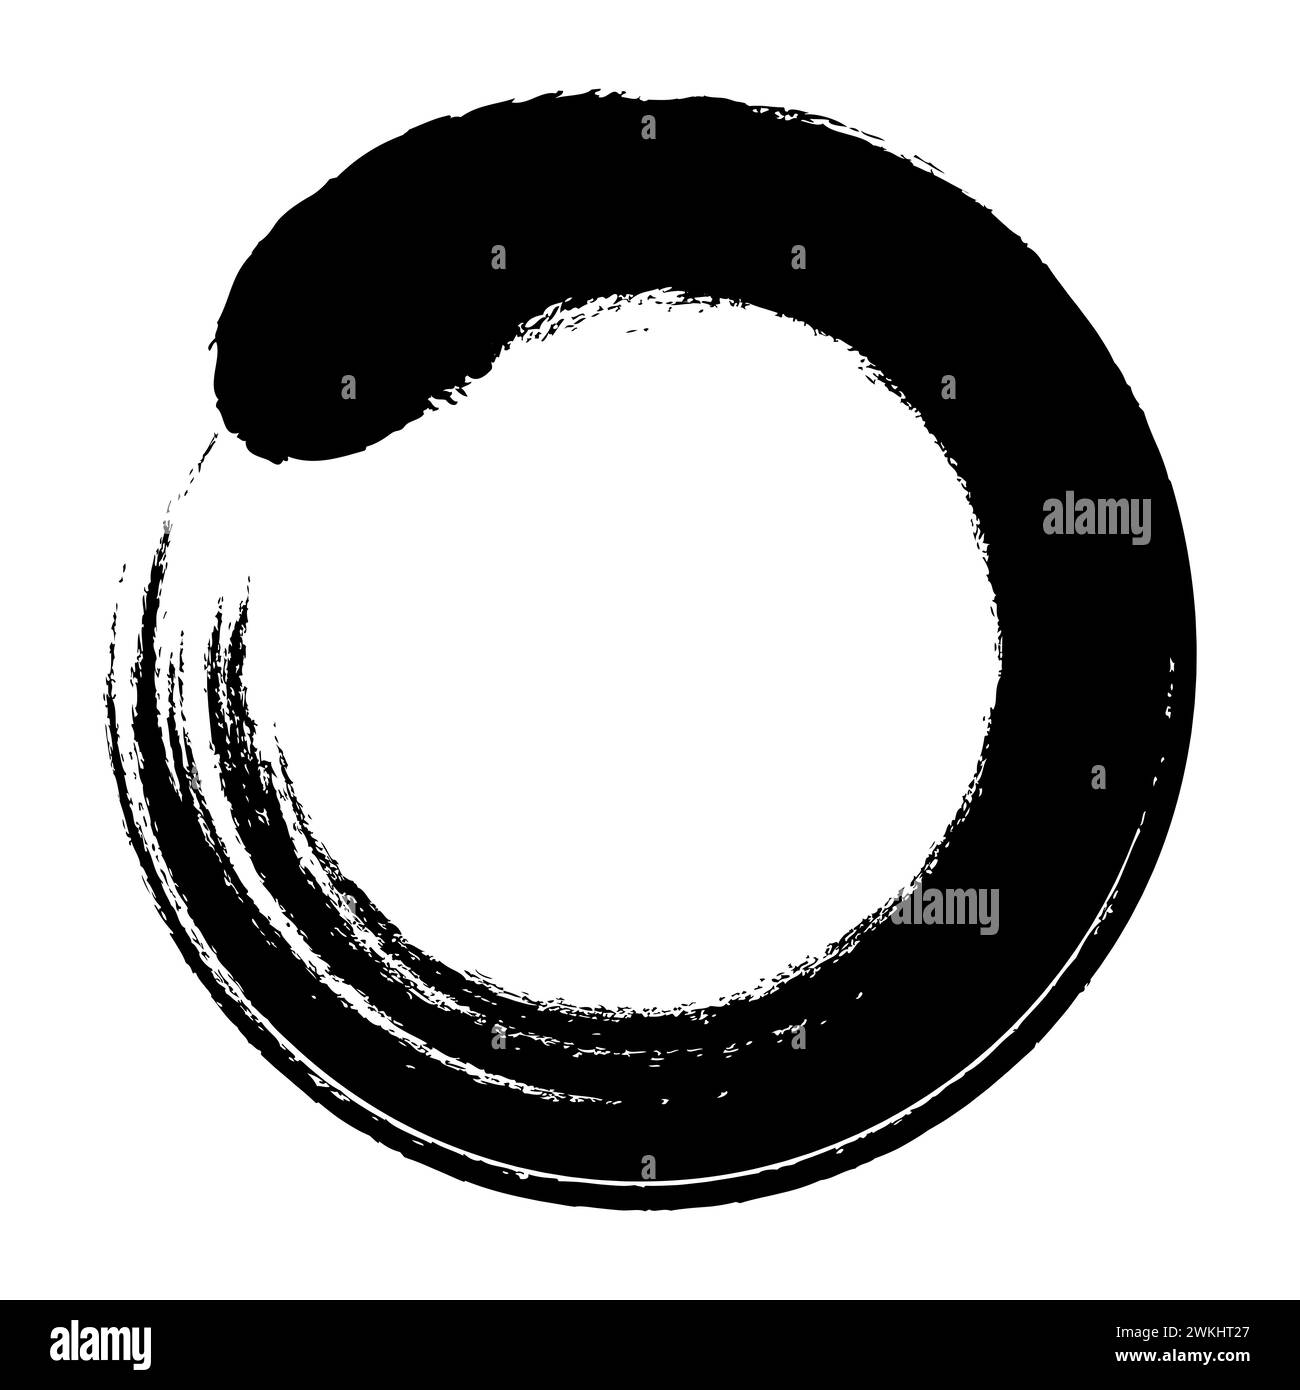 Enso-Kreis, kalligraphisches Zen-Symbol. Ein enso, japanisch für kreisförmige Form, ein Kreis, handgezeichnet in einem ungehemmten Pinselstrich. Stockfoto